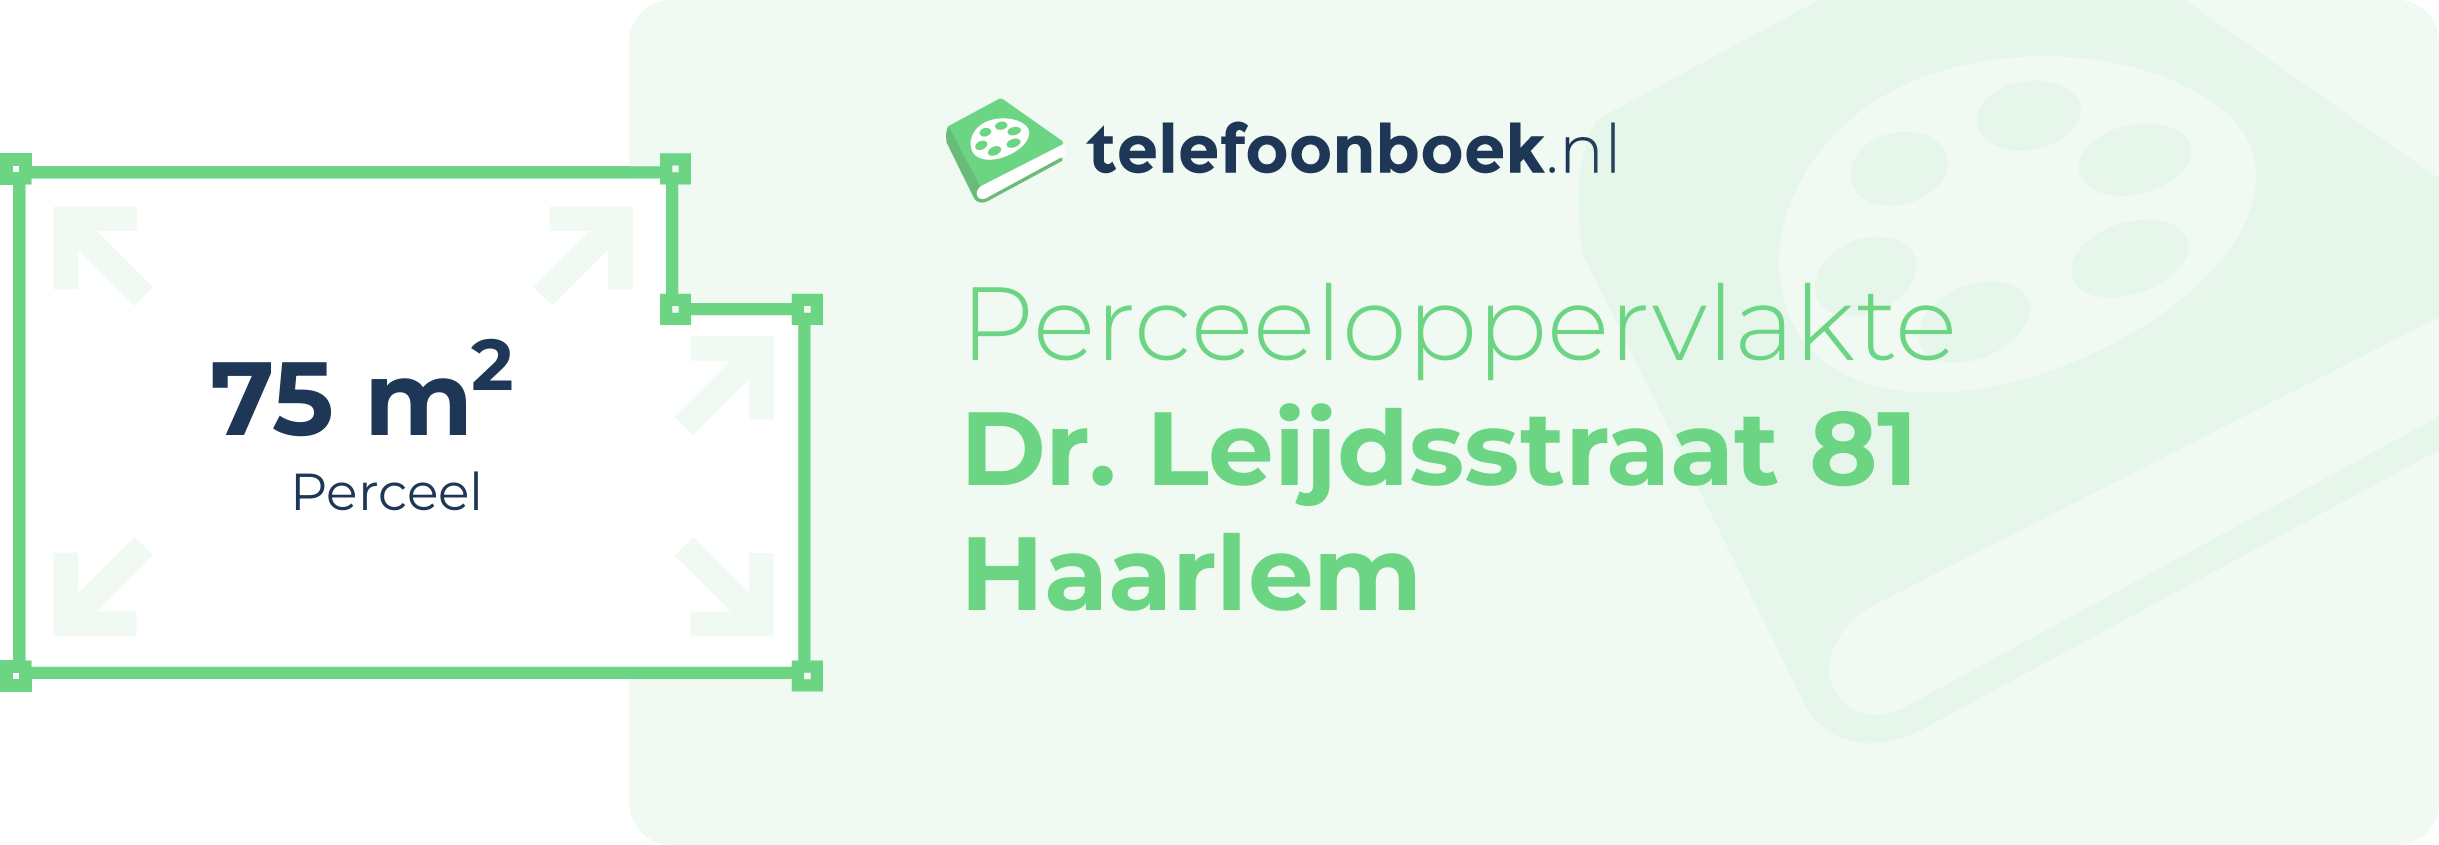 Perceeloppervlakte Dr. Leijdsstraat 81 Haarlem